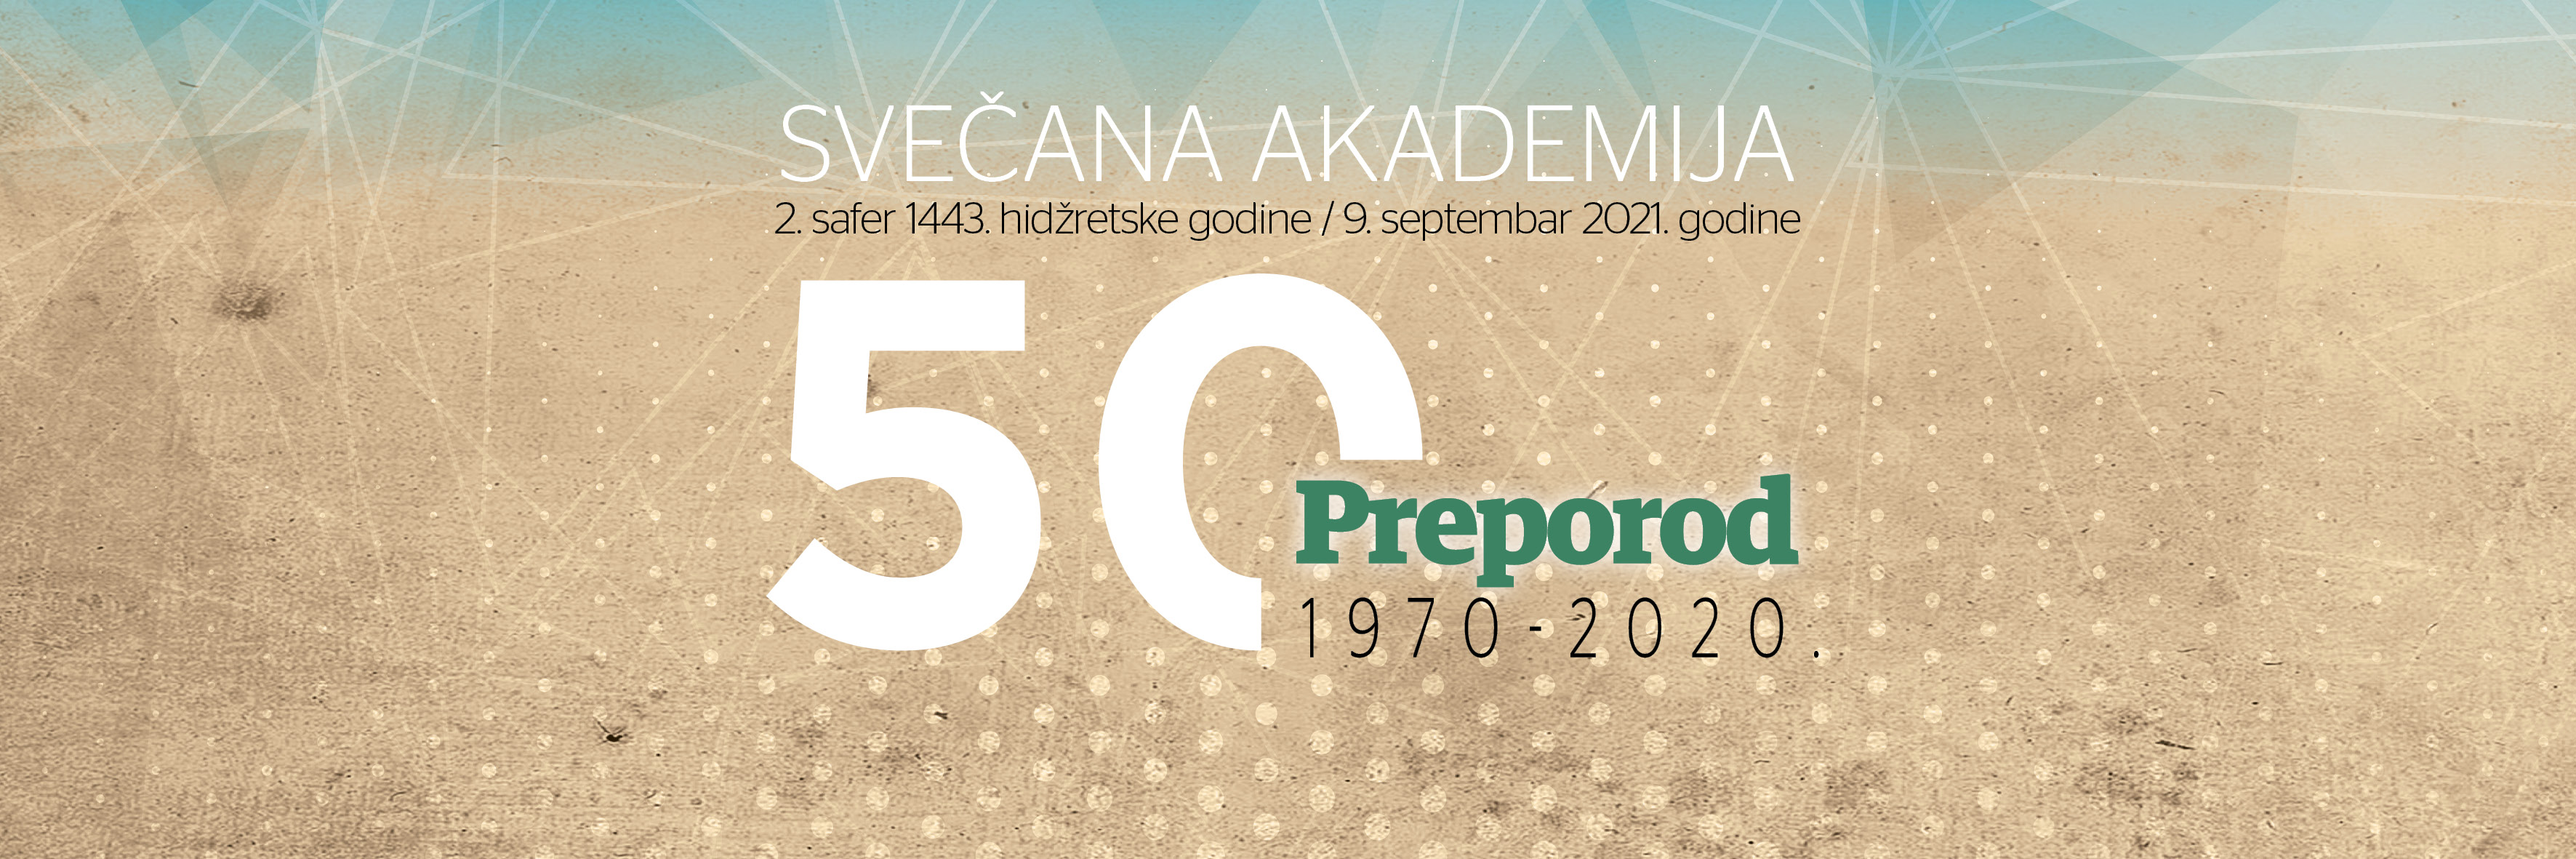 Akademija 50 godina